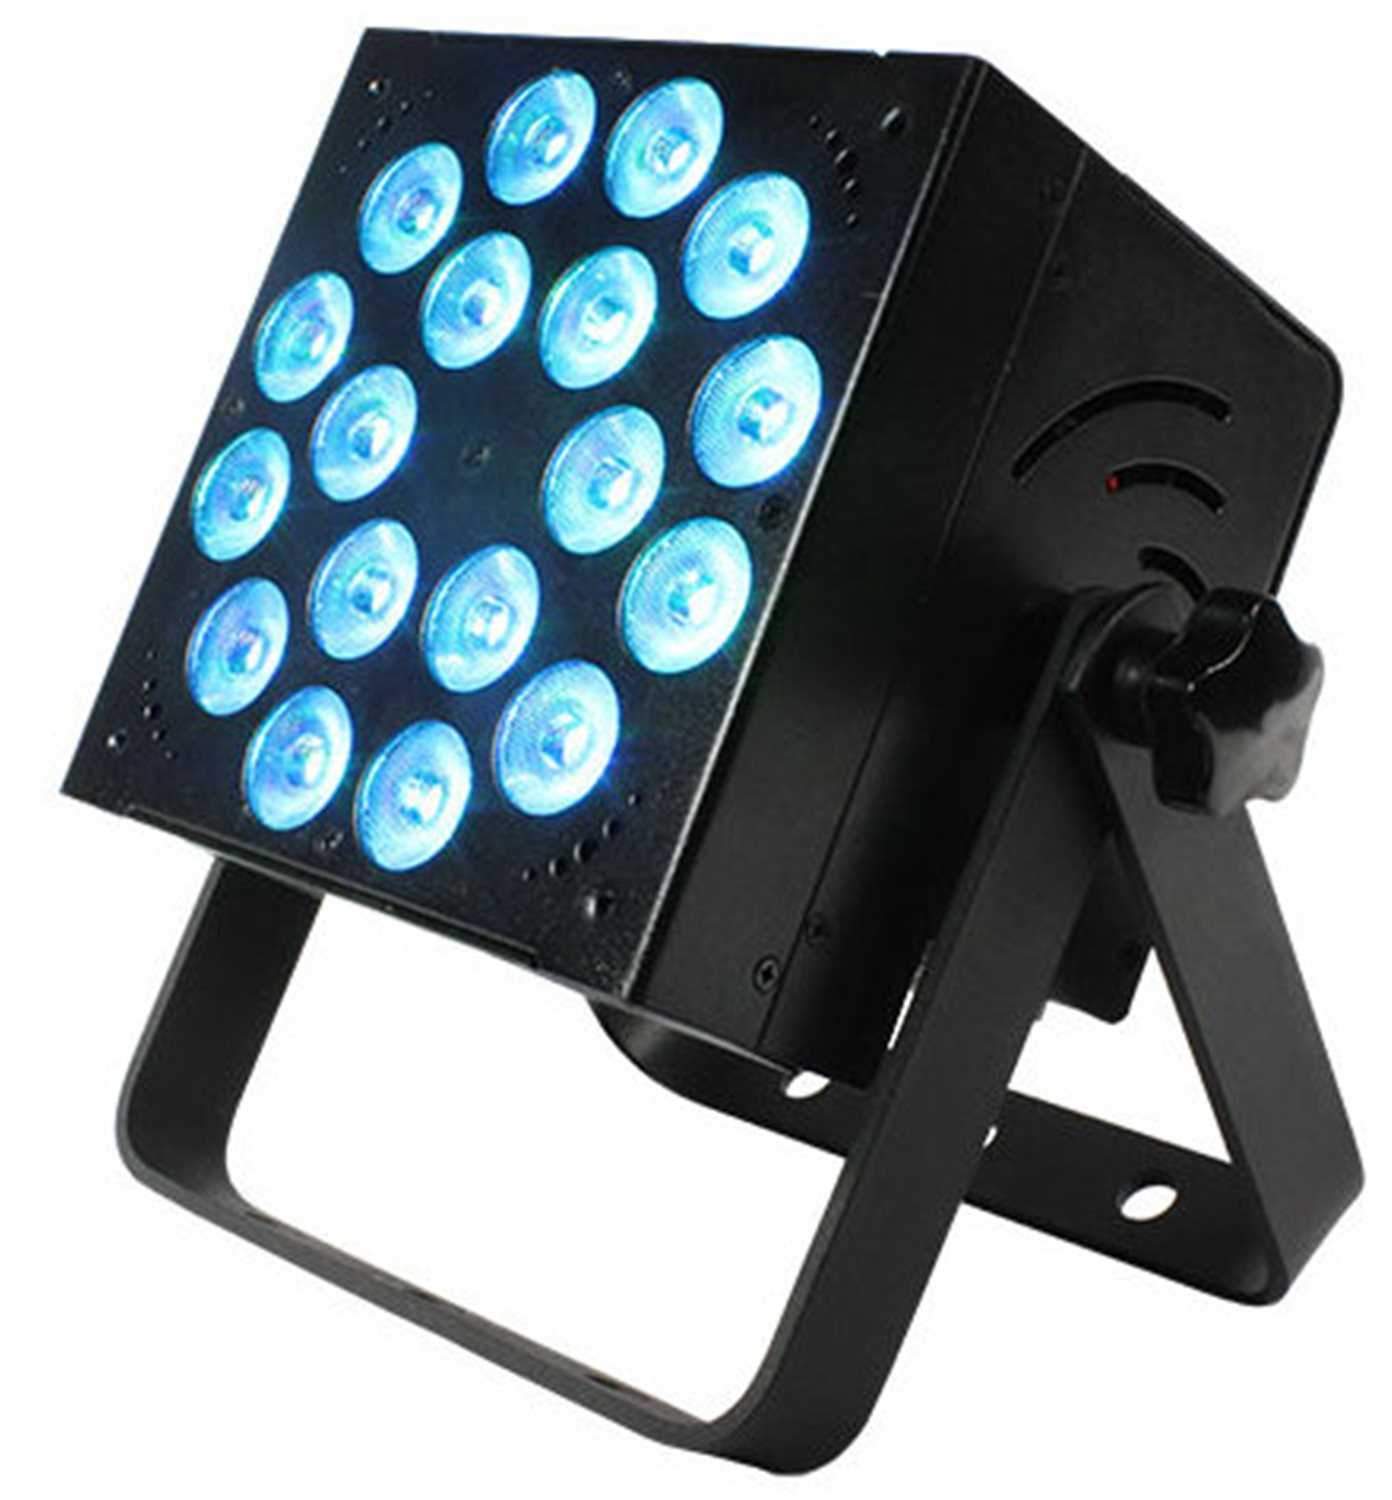 Blizzard RokBox 5 RGBAW 18x 15w LED Par Wash Light - PSSL ProSound and Stage Lighting